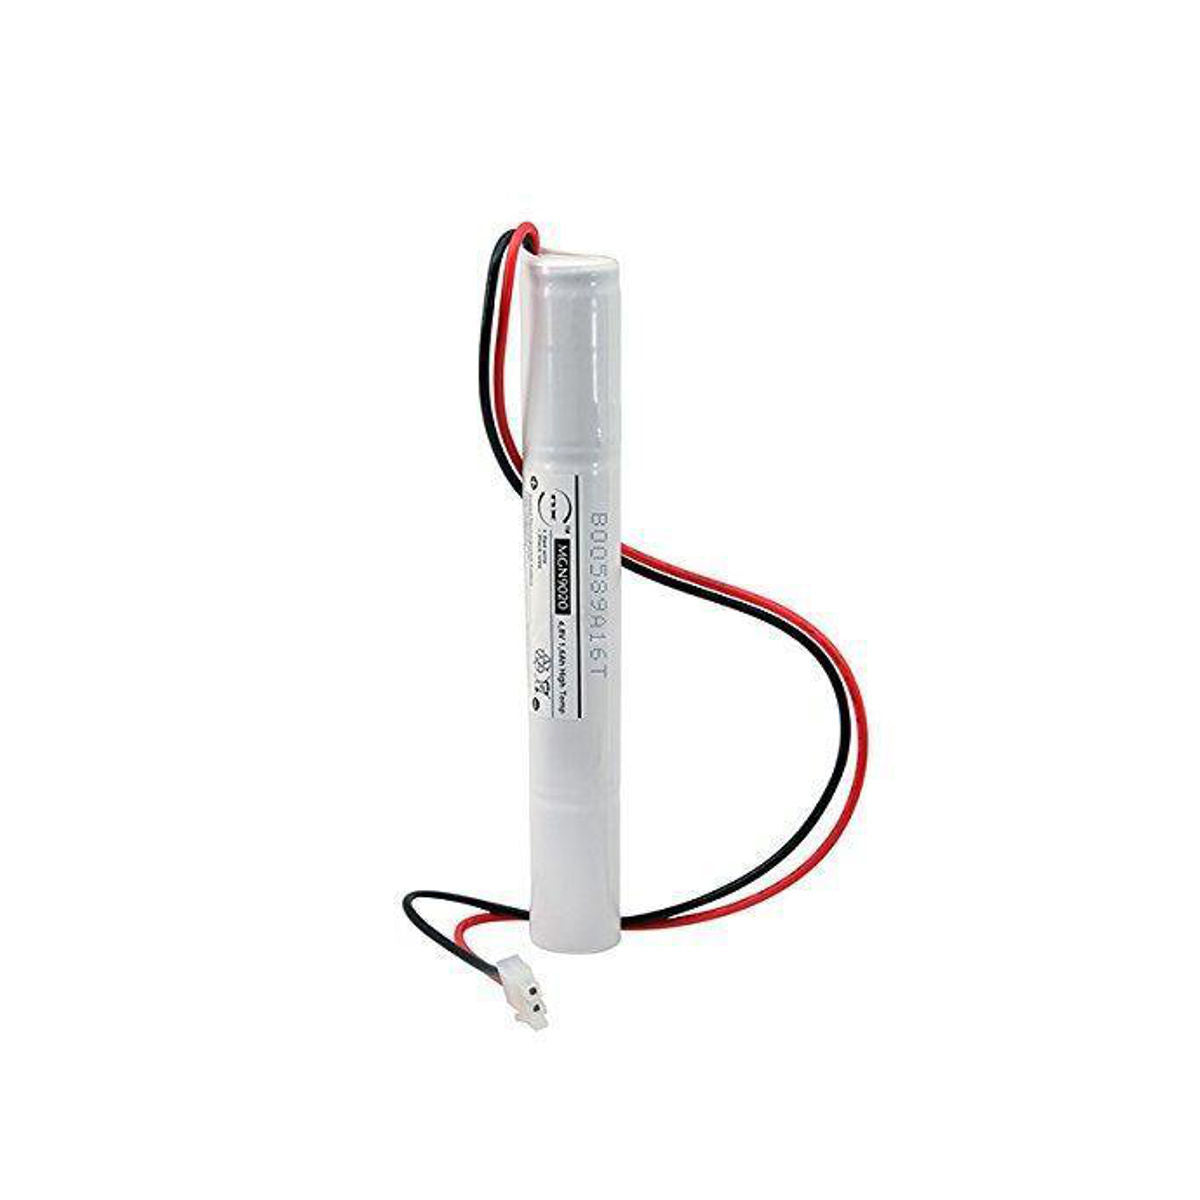 Batteria per Lampada di Emergenza Ricambio 4,8V 1600mA 4SC connettore –  Oniroview